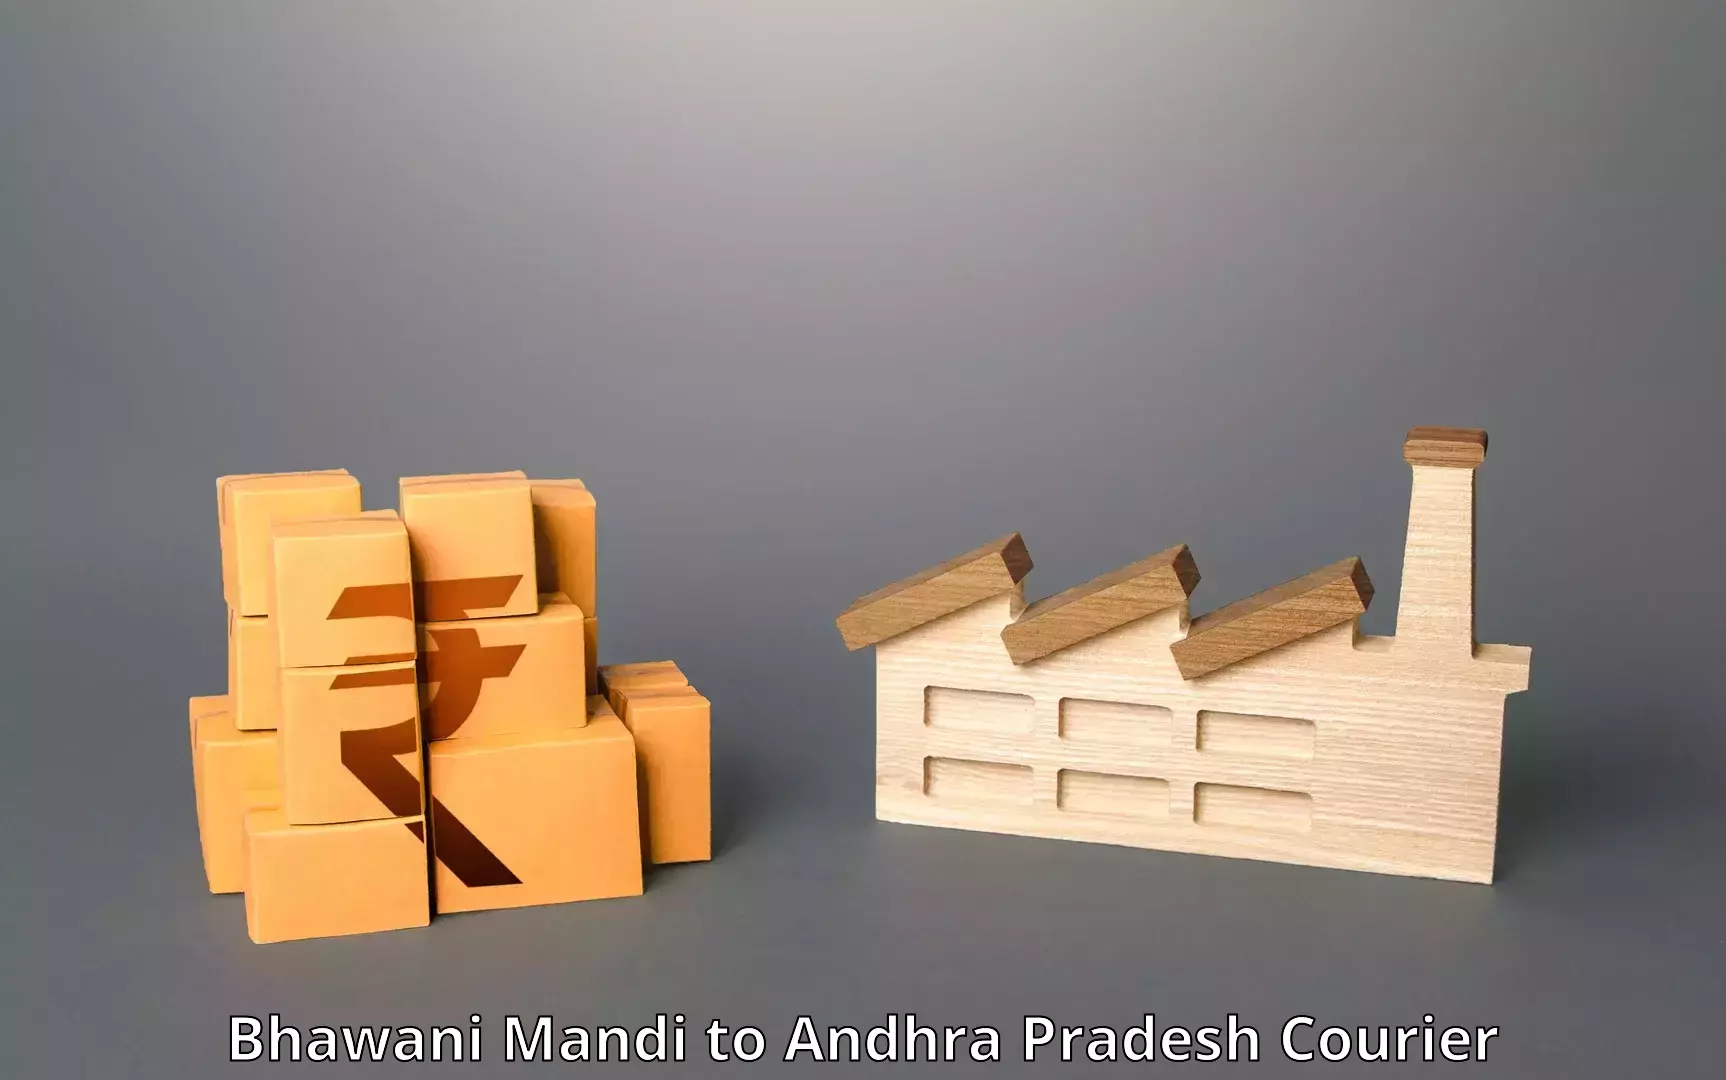 State-of-the-art courier technology Bhawani Mandi to Pedapadu